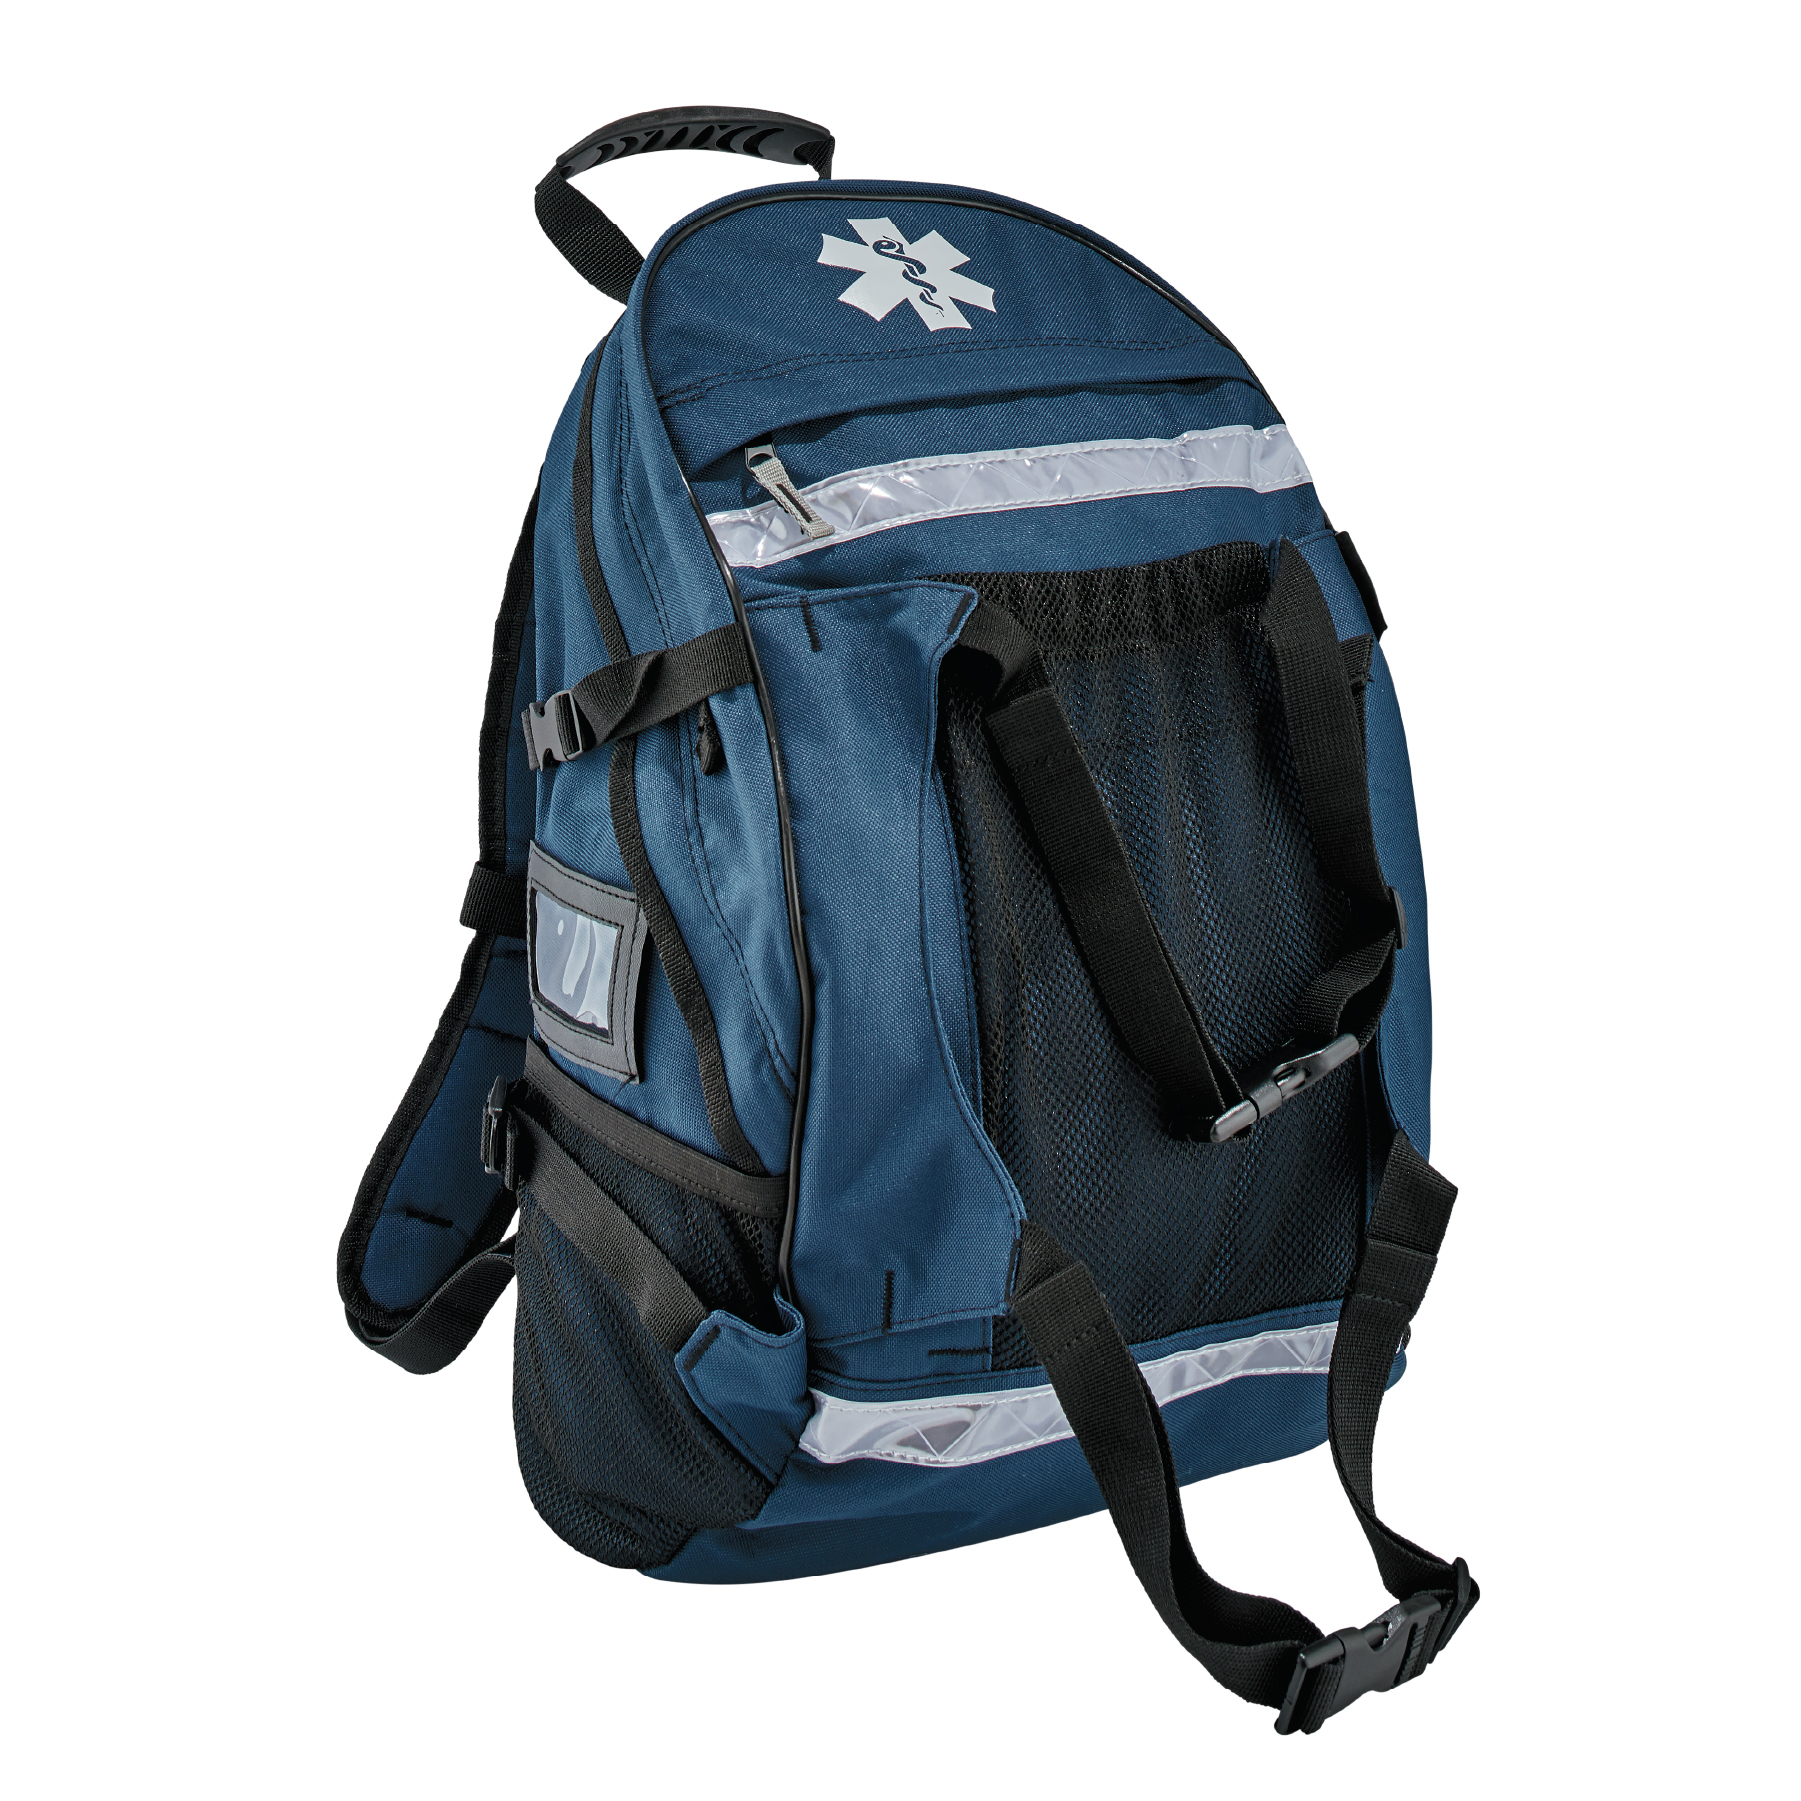 https://www.ergodyne.com/sites/default/files/product-images/5243-first-responder-medic-backpack-blue-front.jpg